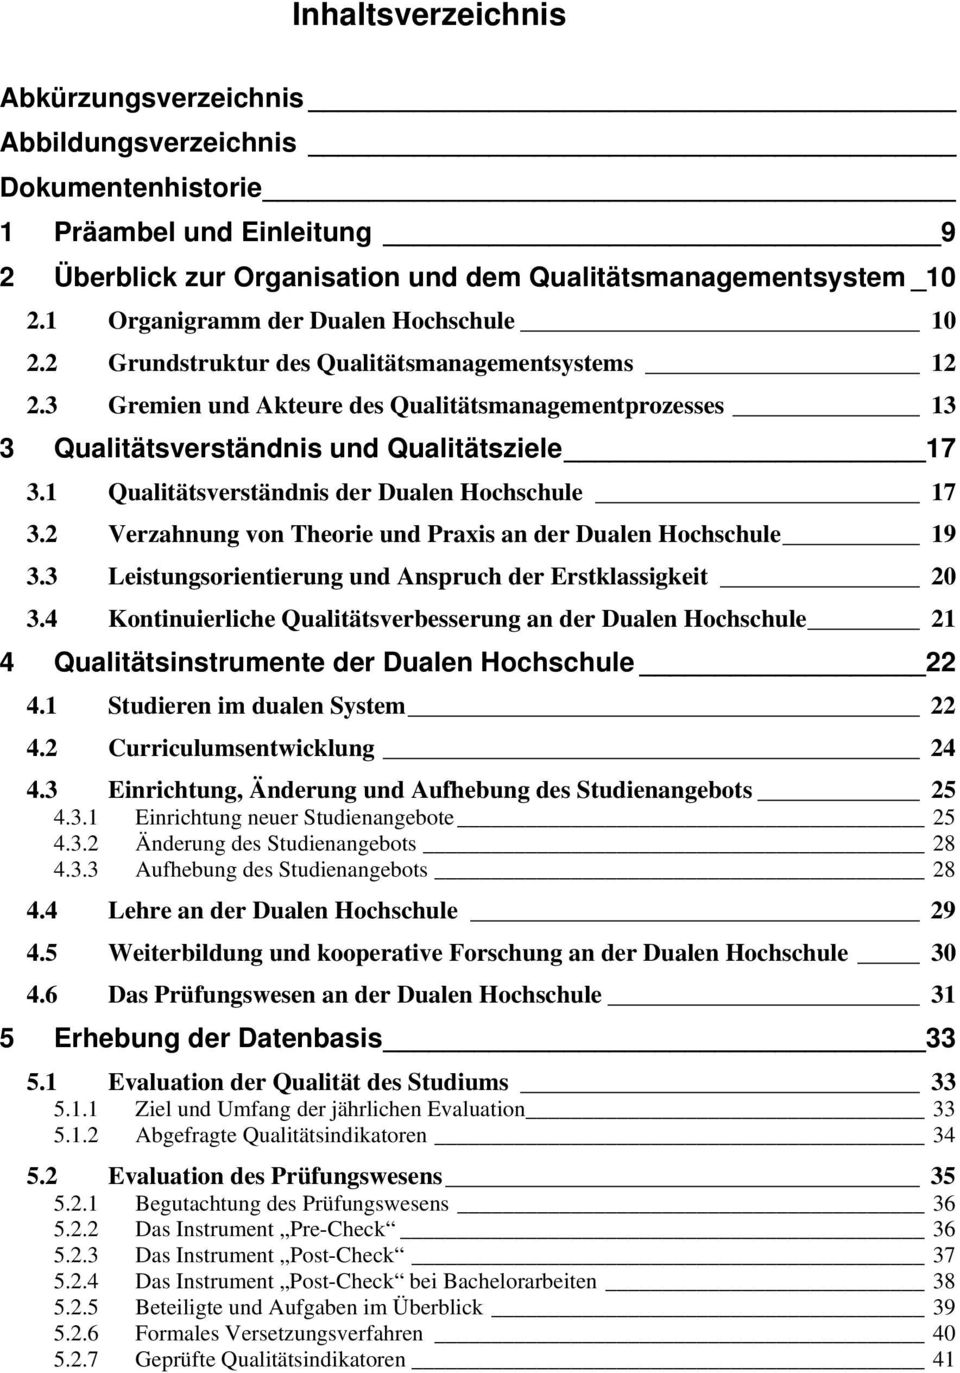 1 Qualitätsverständnis der Dualen Hochschule 17 3.2 Verzahnung von Theorie und Praxis an der Dualen Hochschule 19 3.3 Leistungsorientierung und Anspruch der Erstklassigkeit 20 3.